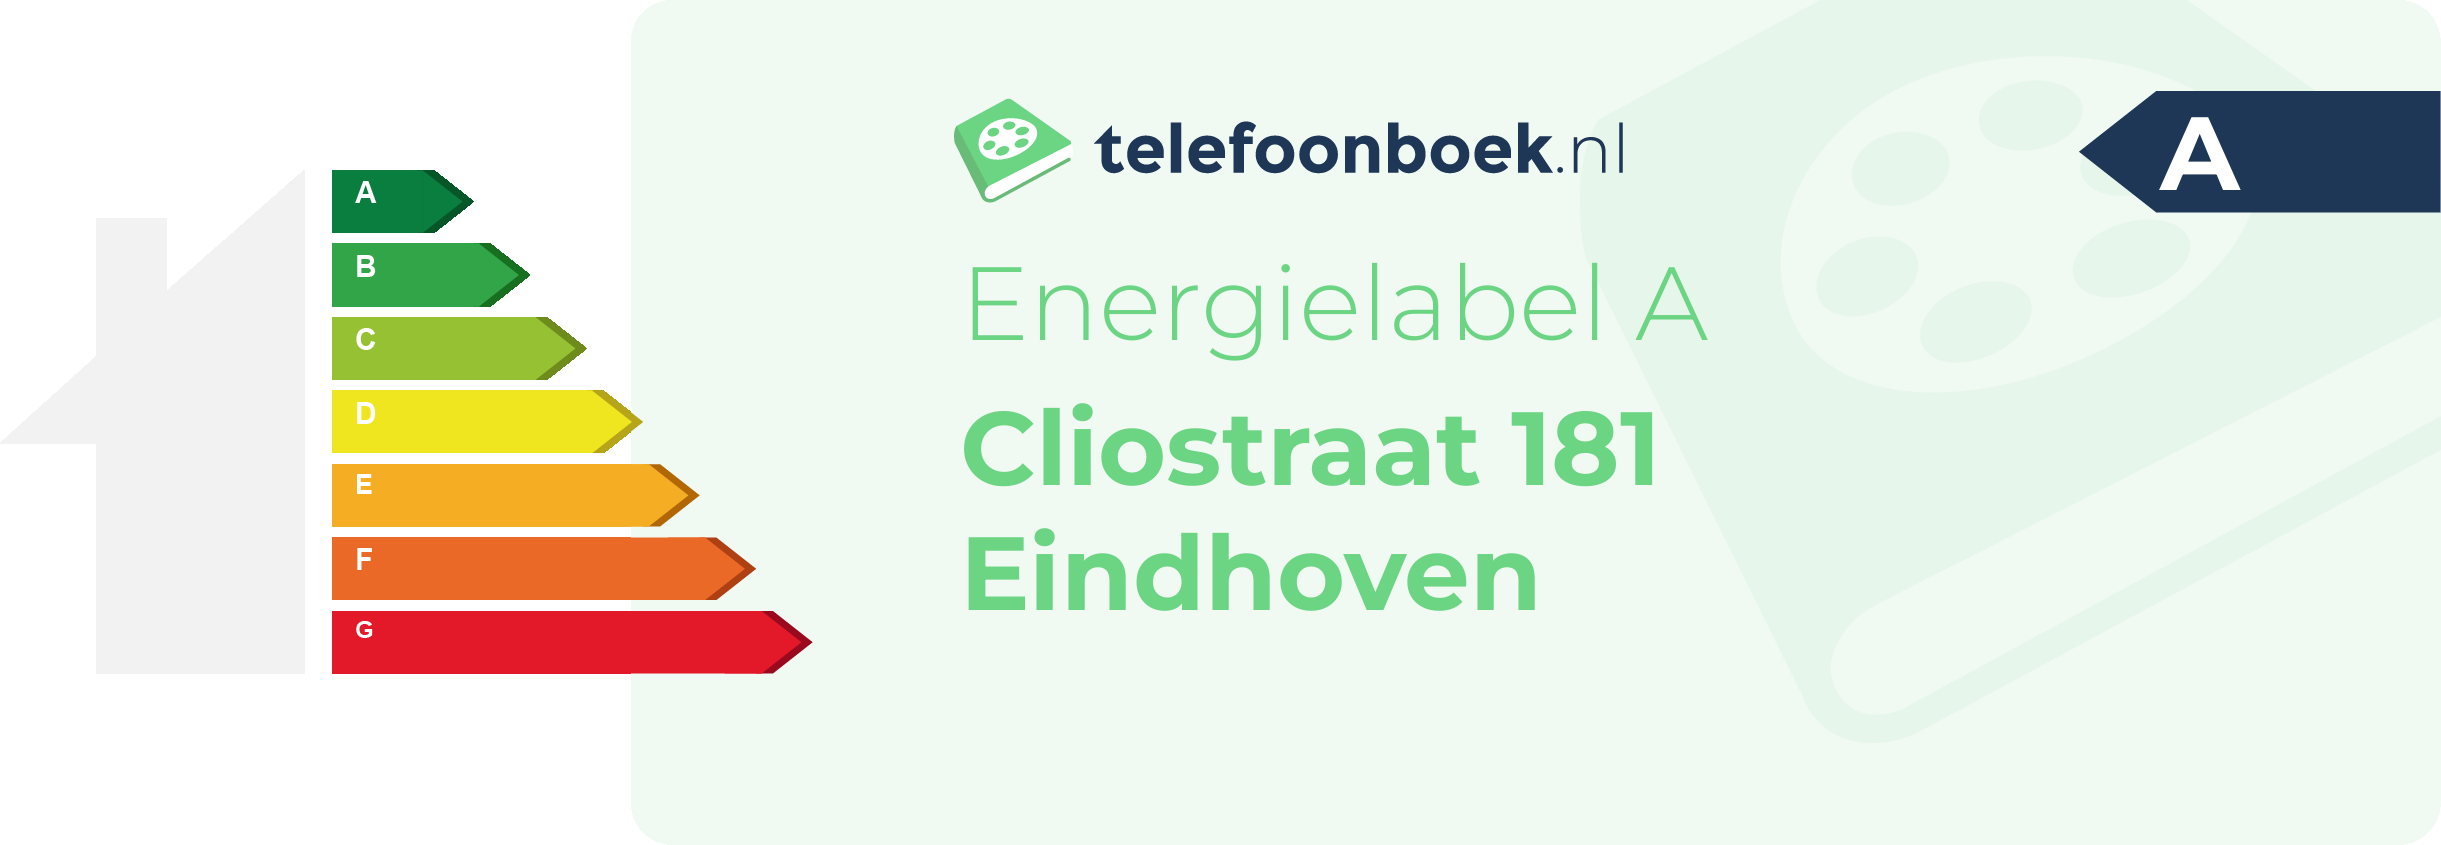 Energielabel Cliostraat 181 Eindhoven